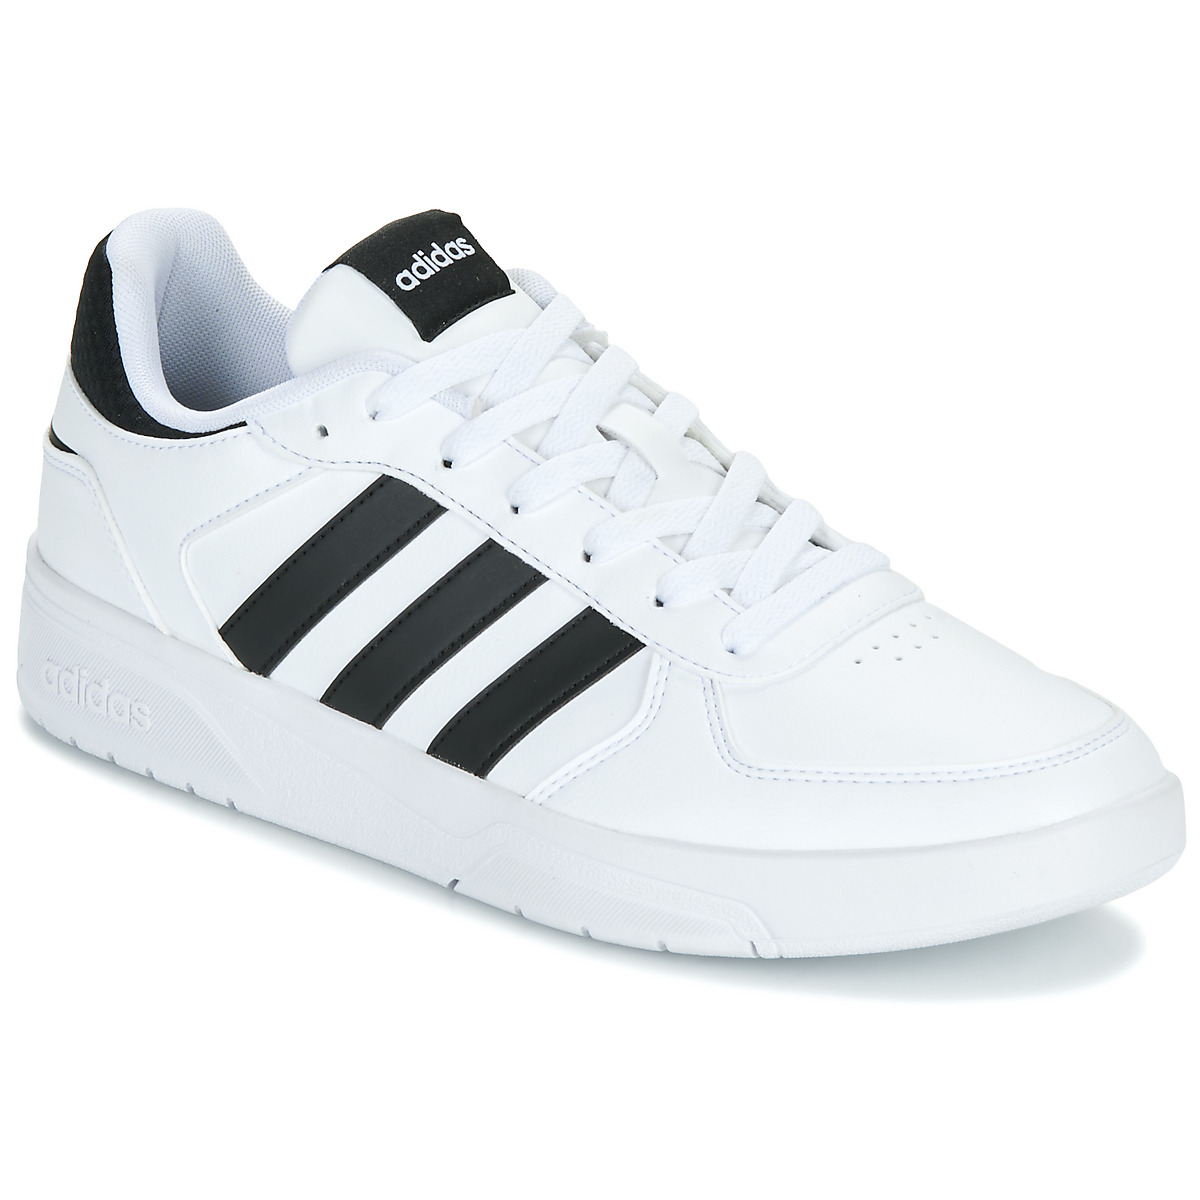 Adidas Courtbeat White